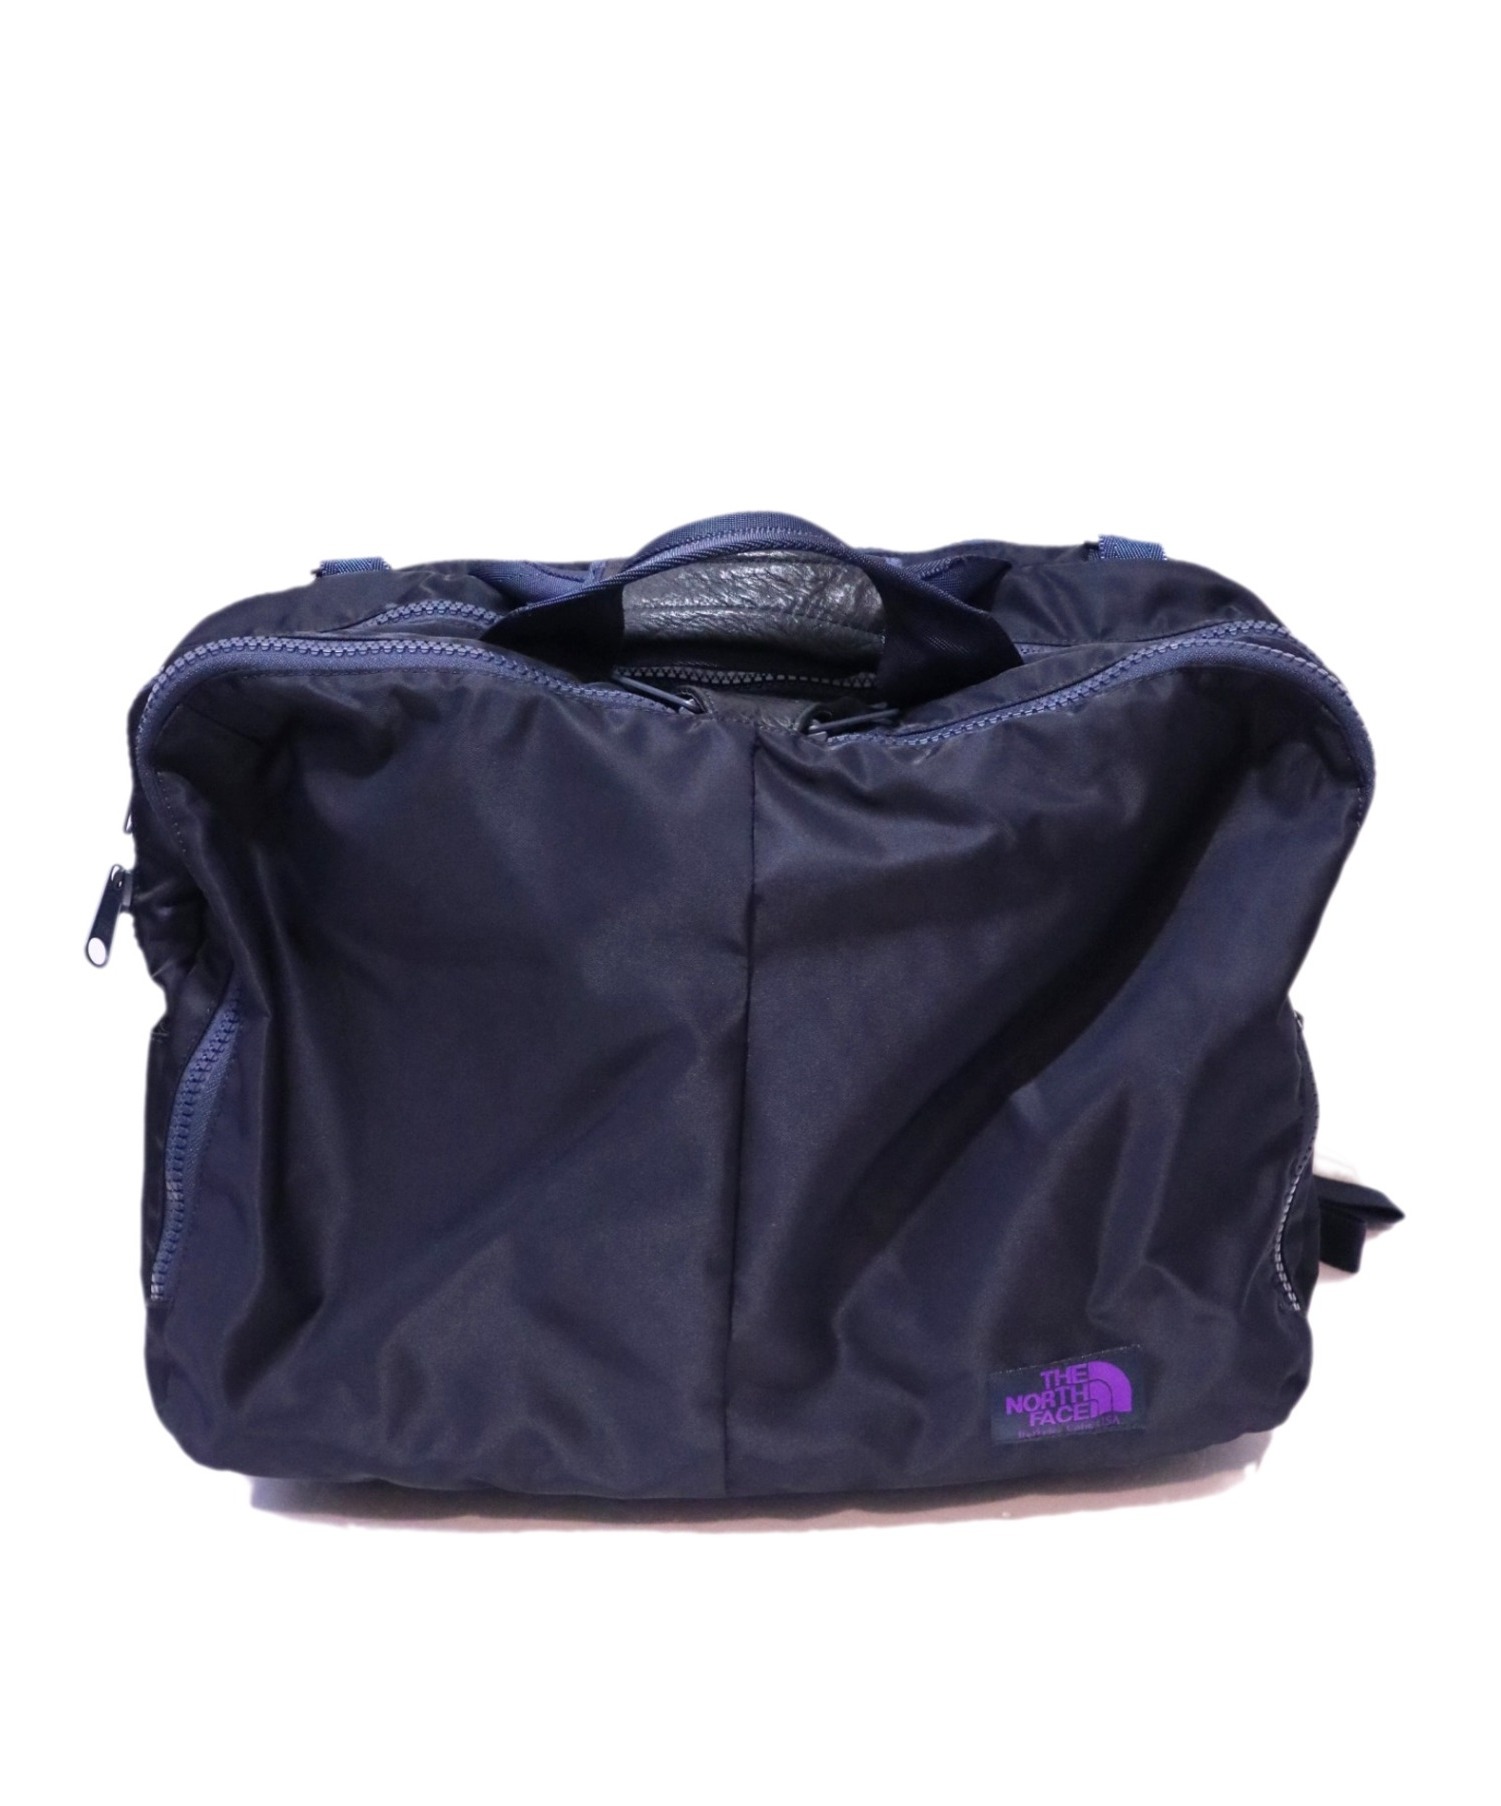 中古 古着通販 The Northface Purplelabel ザノースフェイスパープルレーベル 3way Bag ネイビー Nn7523n 参考定価 34 100 ブランド 古着通販 トレファク公式 Trefac Fashion